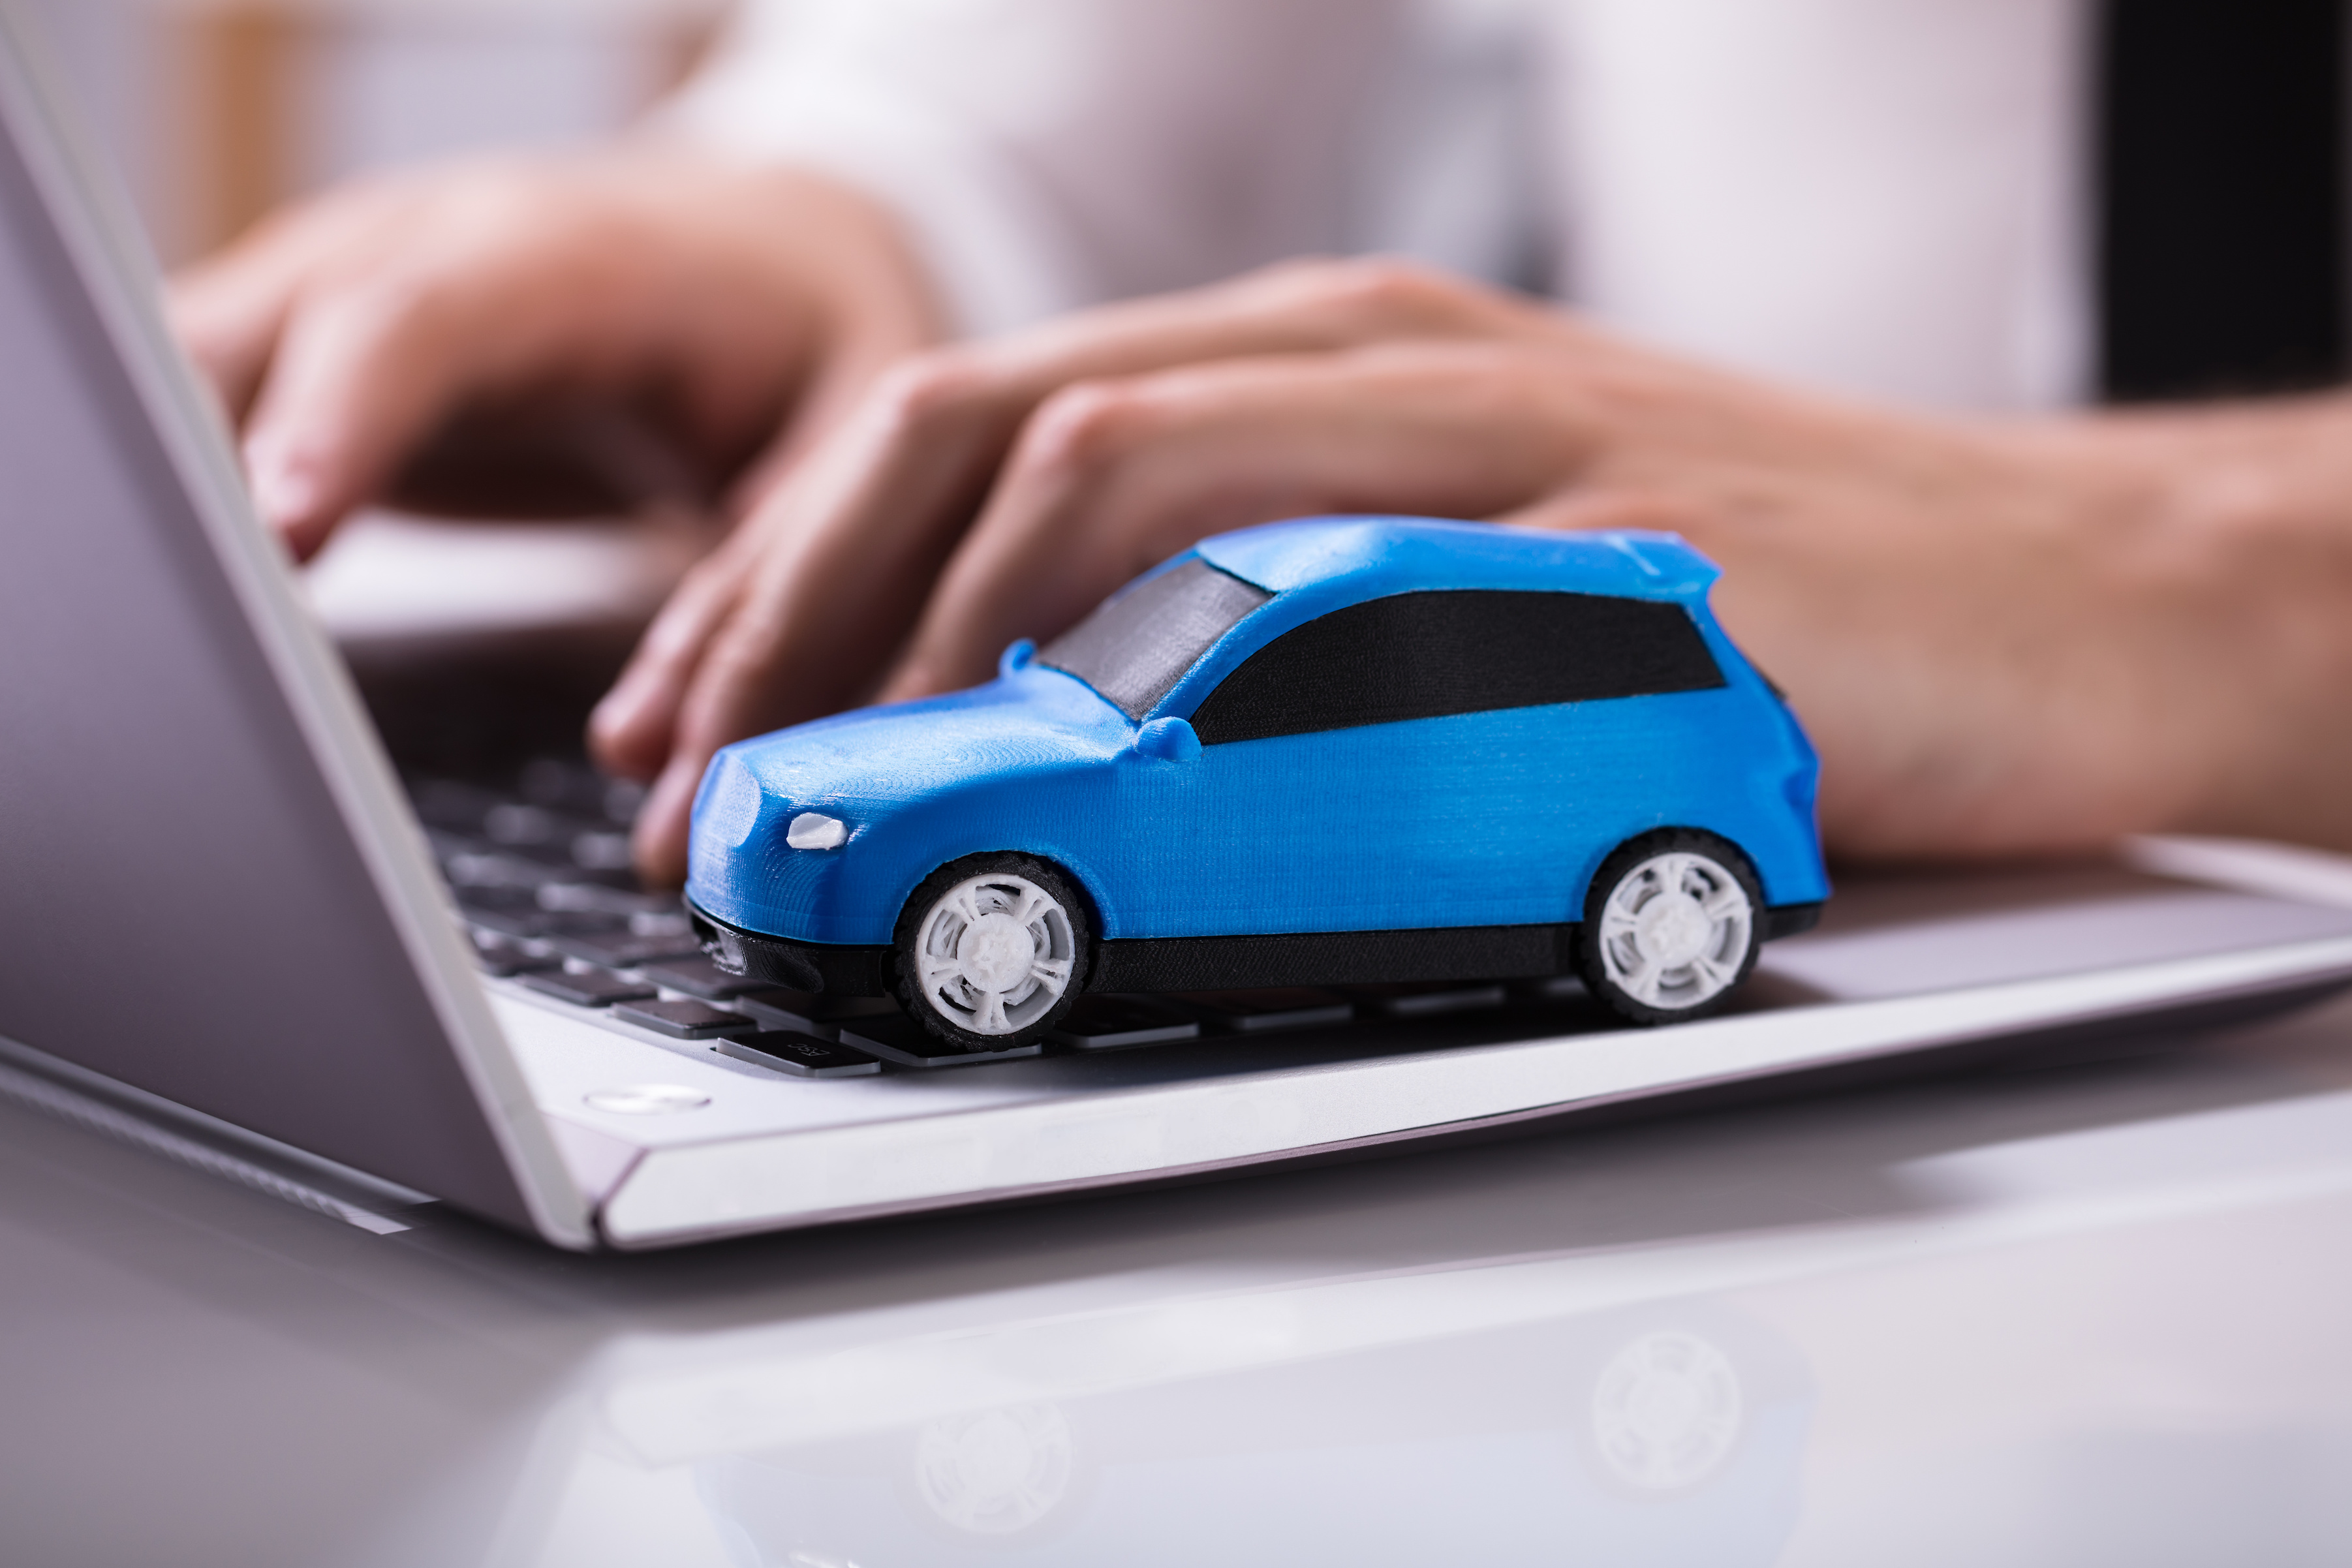 Trouver la meilleure offre d'assurance auto en ligne en fonction de vos besoins en suivant nos conseils. © Andrey Popov, Adobe Stock